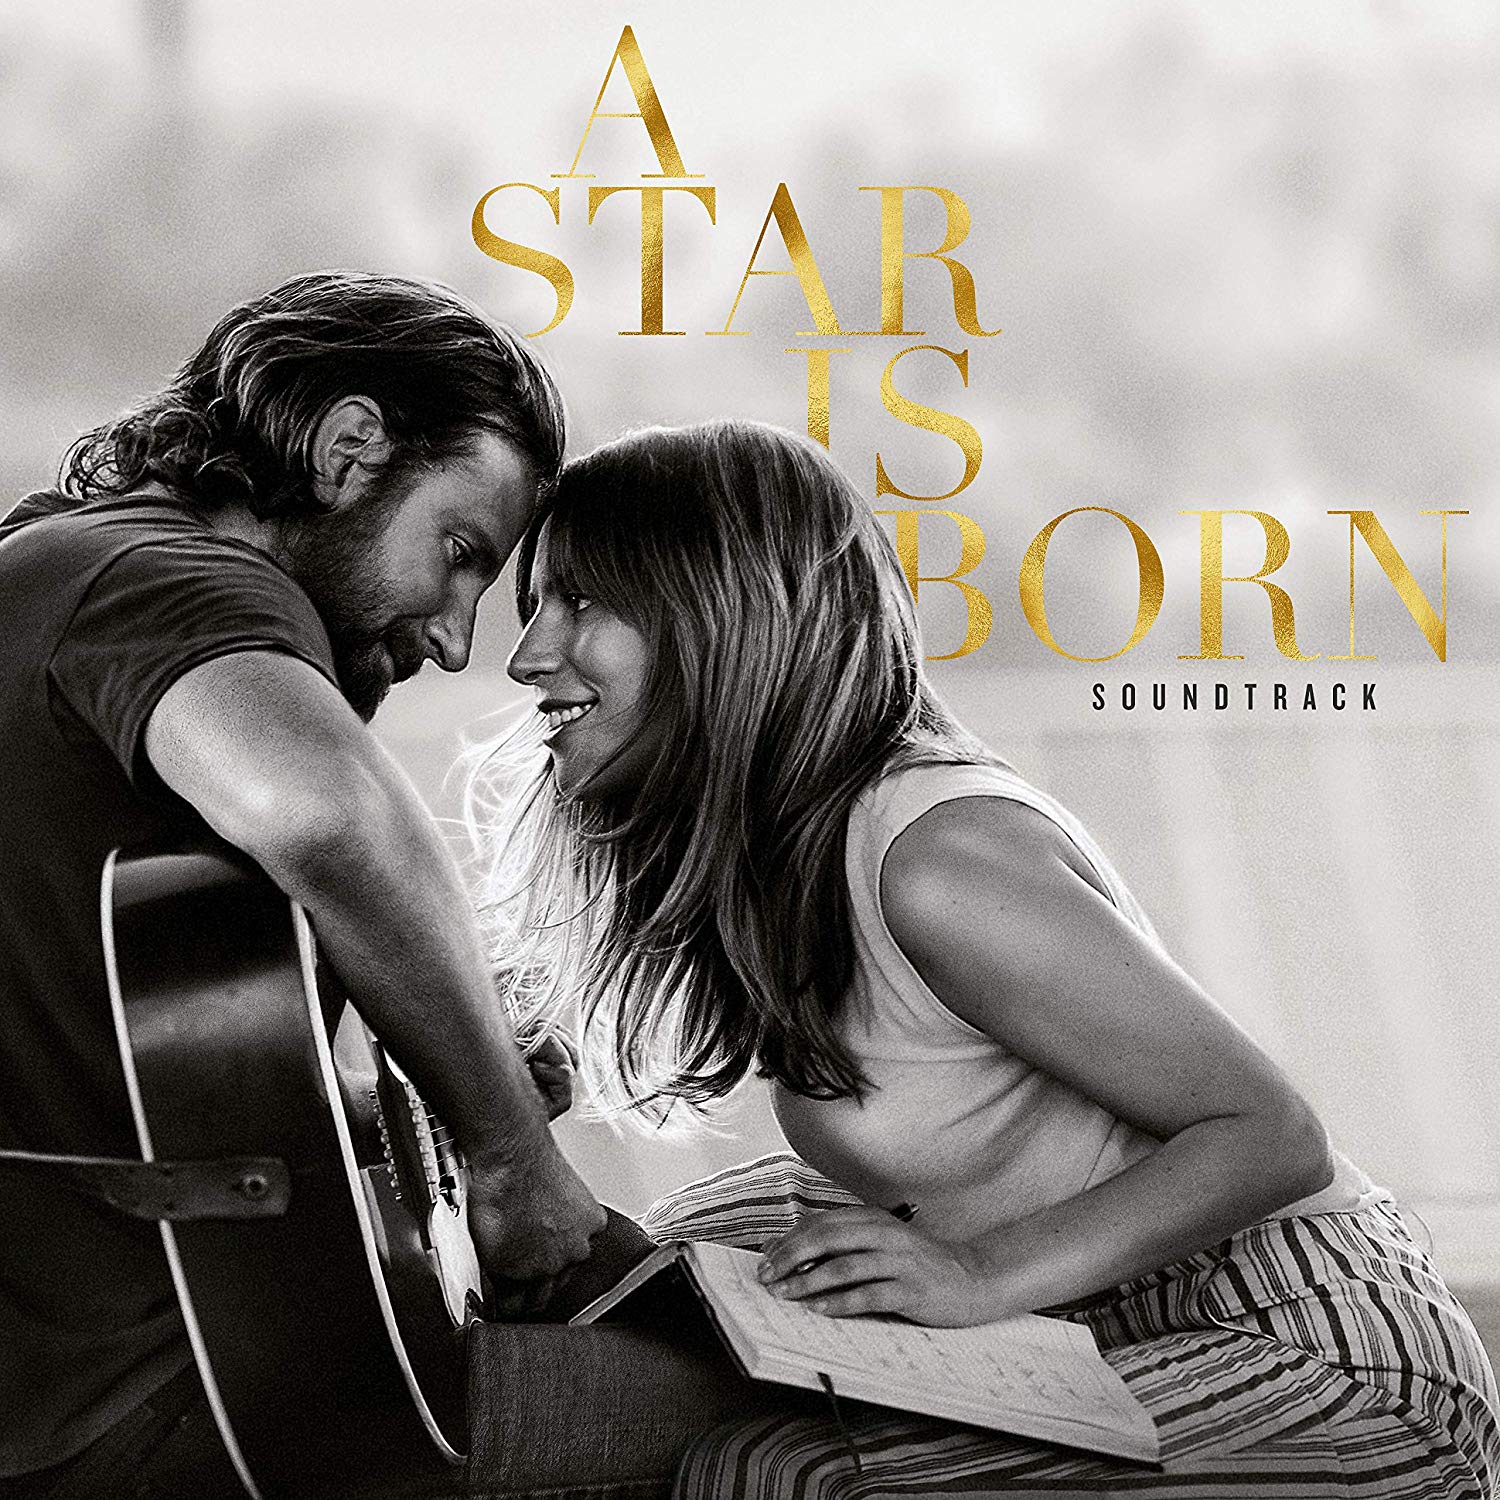 Lady Gaga & Bradley Cooper - A Star Is Born Soundtrack (2018) [FLAC 24bit/48kHz]